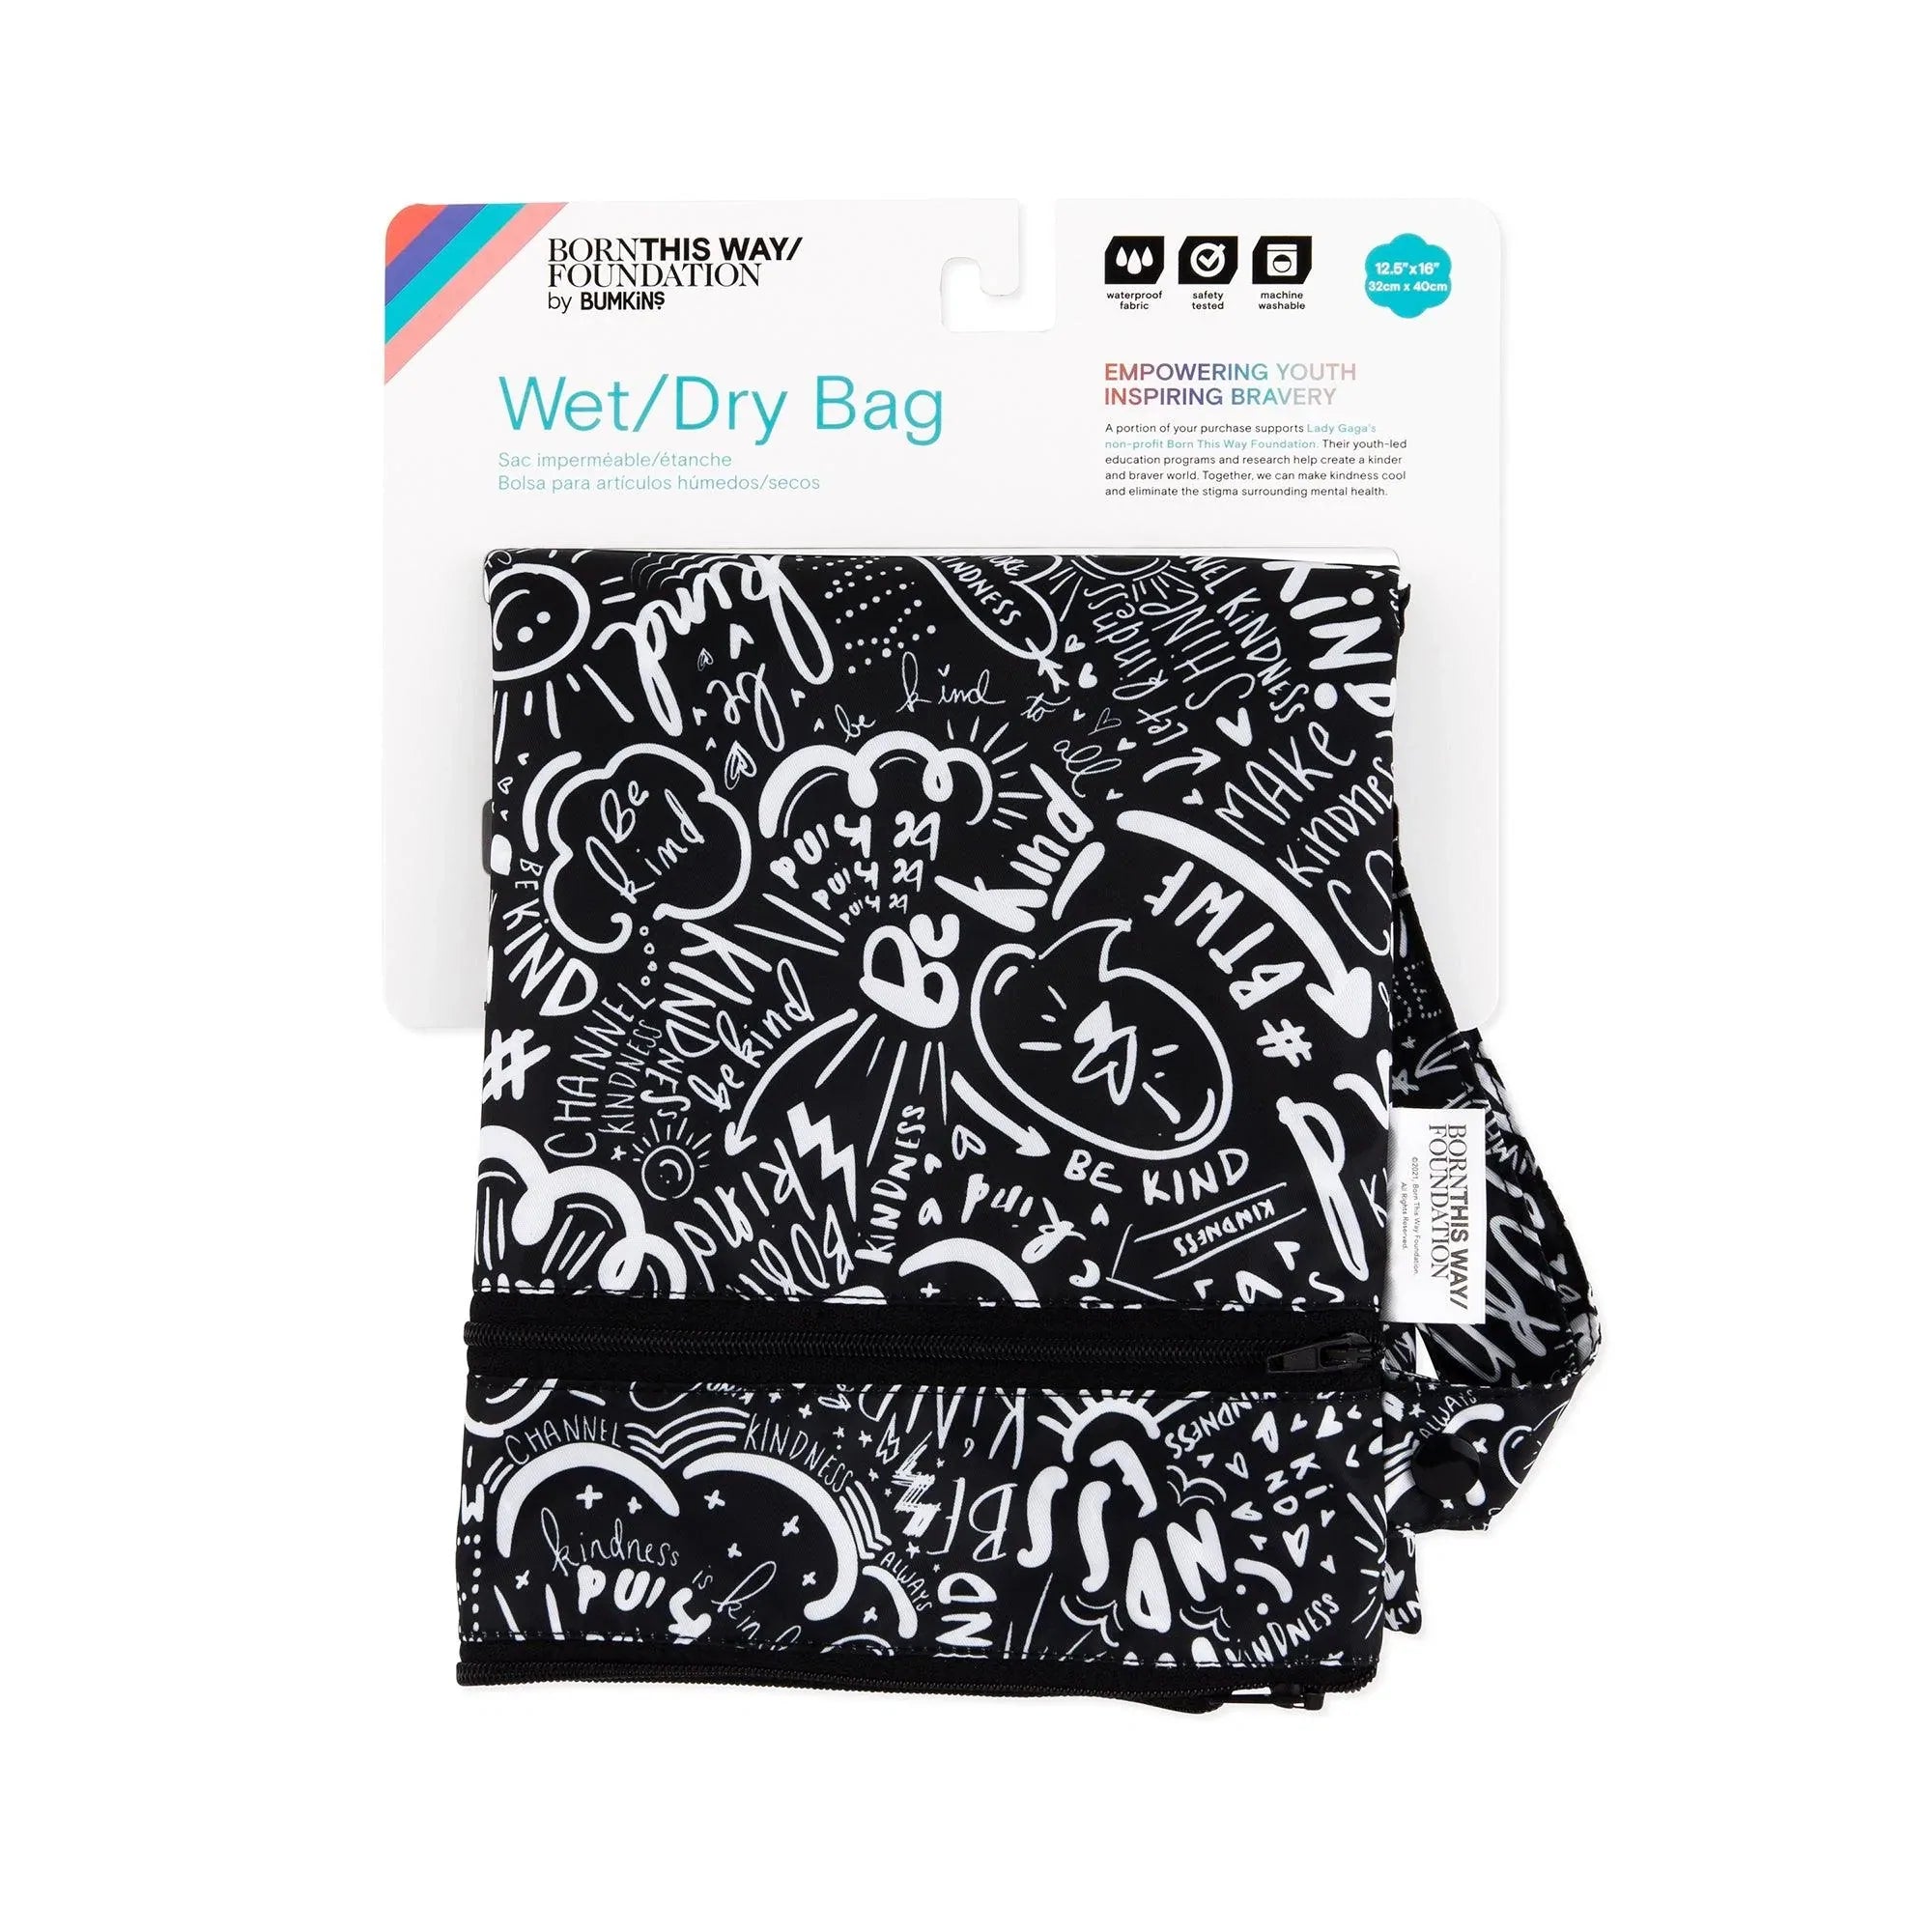 Wet / Dry Bag: Be Kind - Bumkins